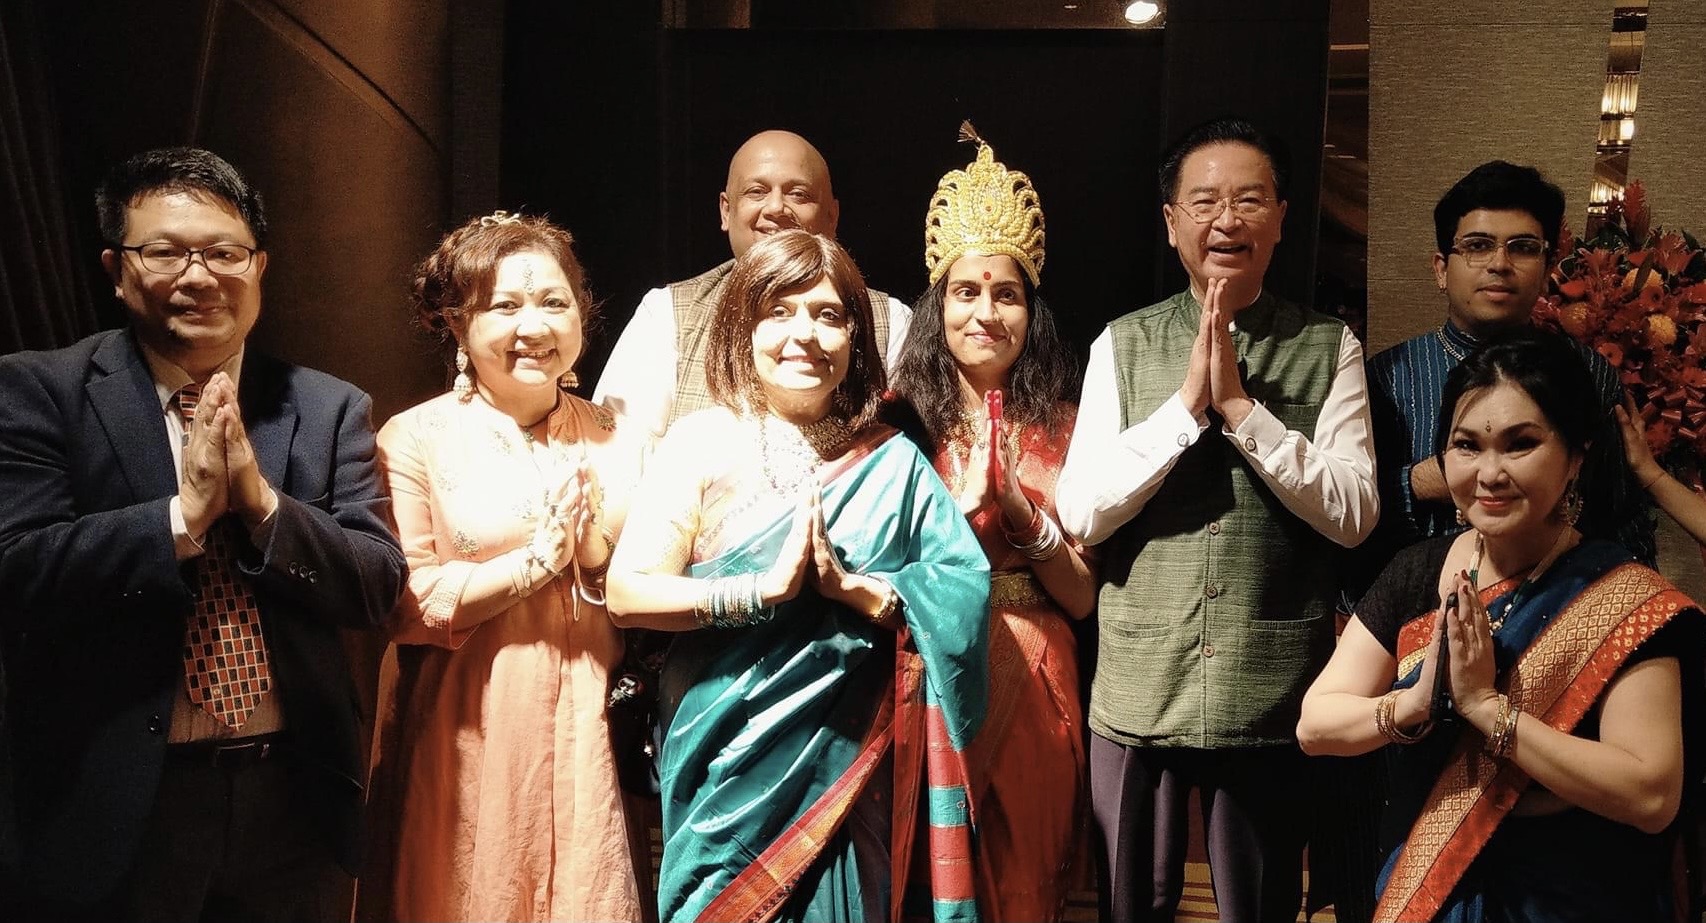 讓 印 度 音 樂 舞 蹈 文 化 展 演 在 台 灣 各 處 發 芽 ， 也 是 促 進 雙 邊 友 誼 合 作 的 良 好 互 動 。 ( 圖 右 二 為 外 交 部 吳 釗 燮 部 長 ， 左 三 為 李 眉 君 老 師 ) 